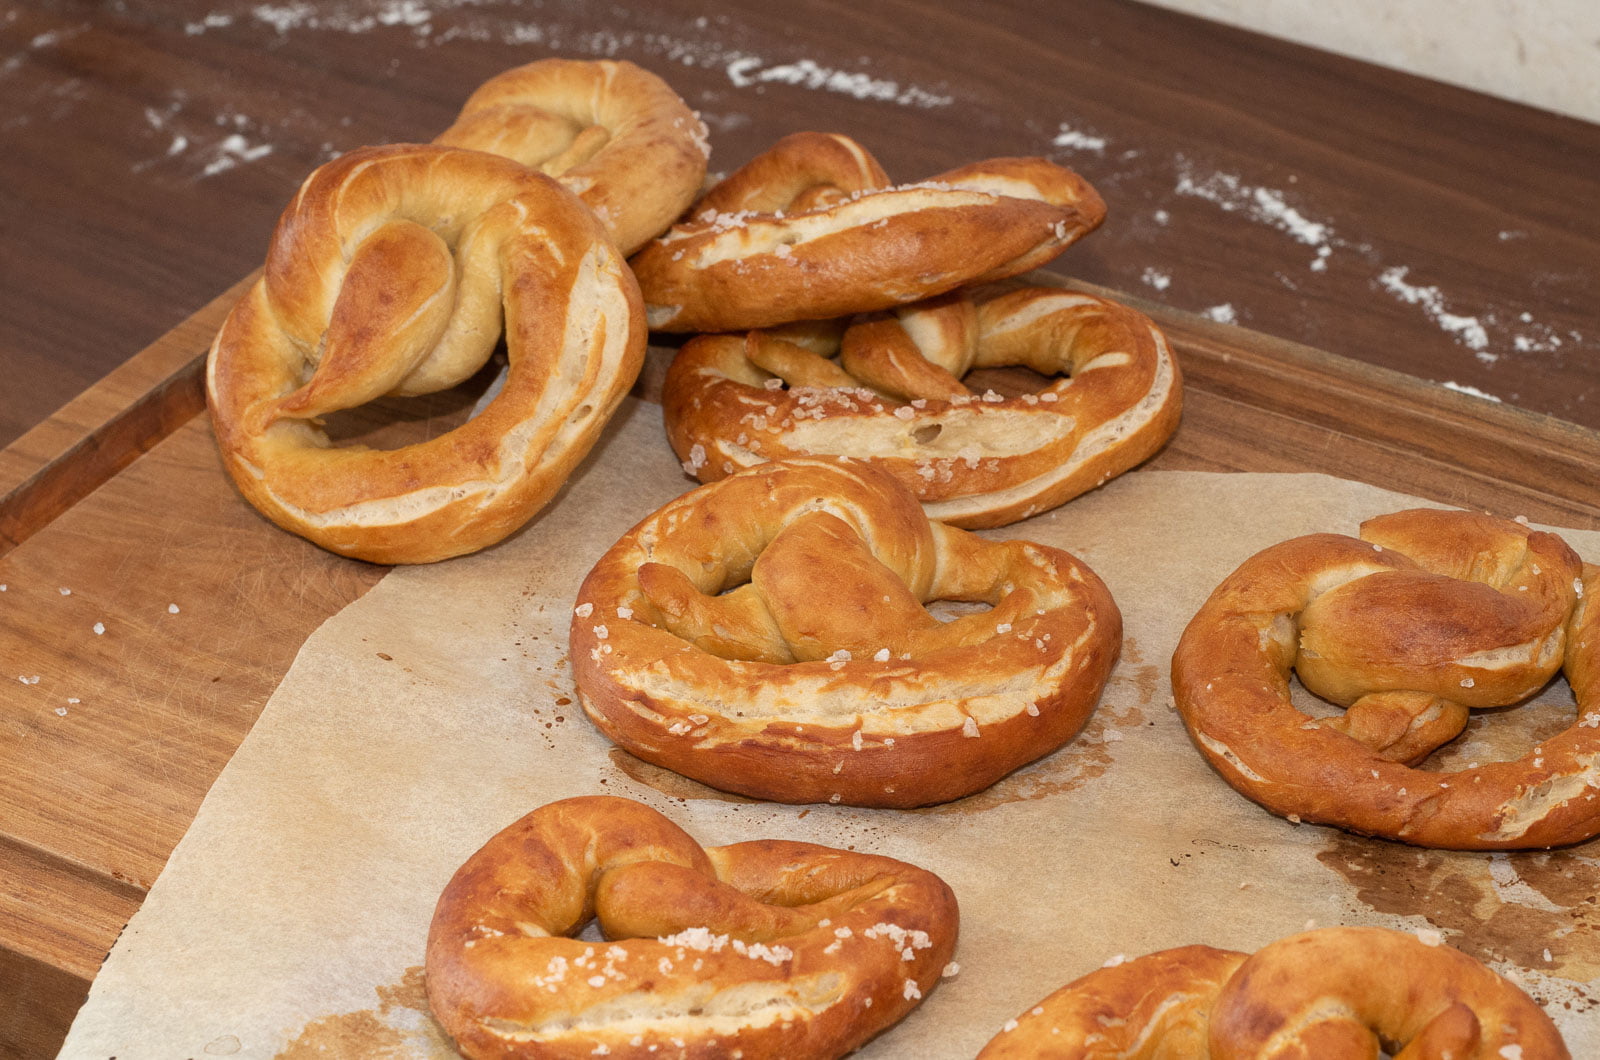 Fertig gebackene Brezeln auf der Arbeitsfläche - Ready baked pretzels on the kitchen counter